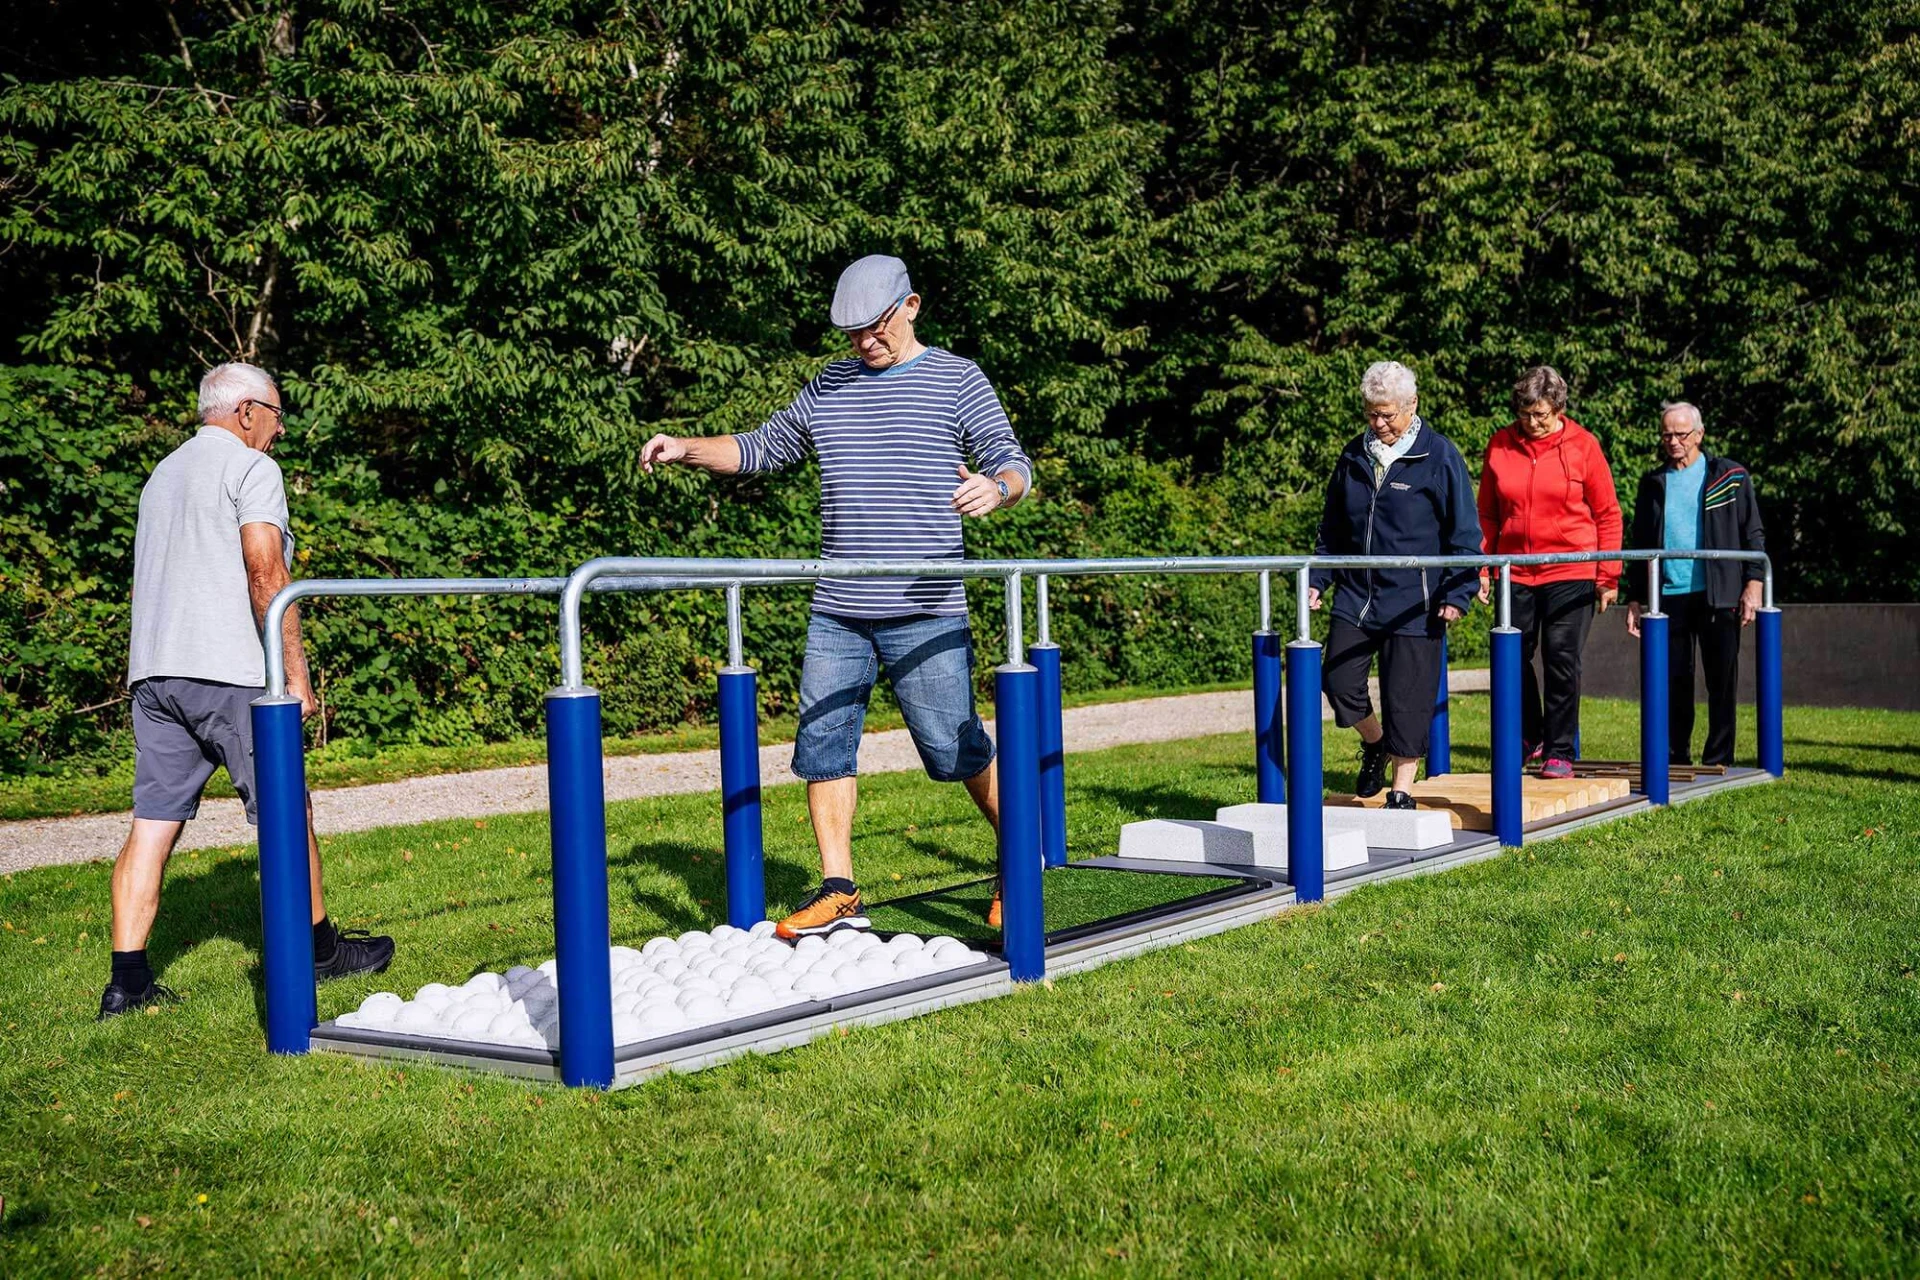 elderly outdoor gym equipment for seniors